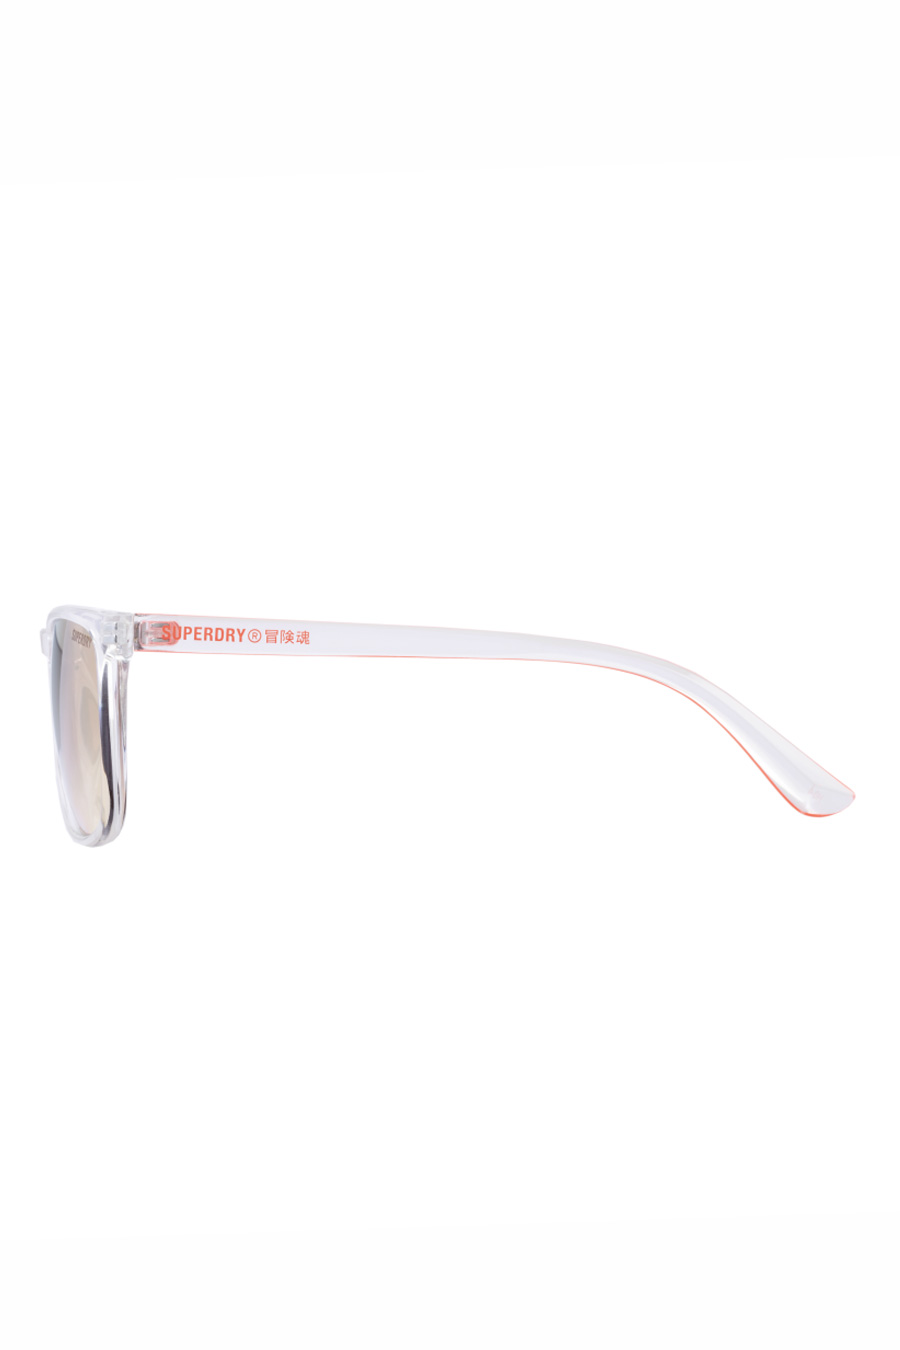 Sunglasses SUPERDRY SDS-SHOCKWAVE-150